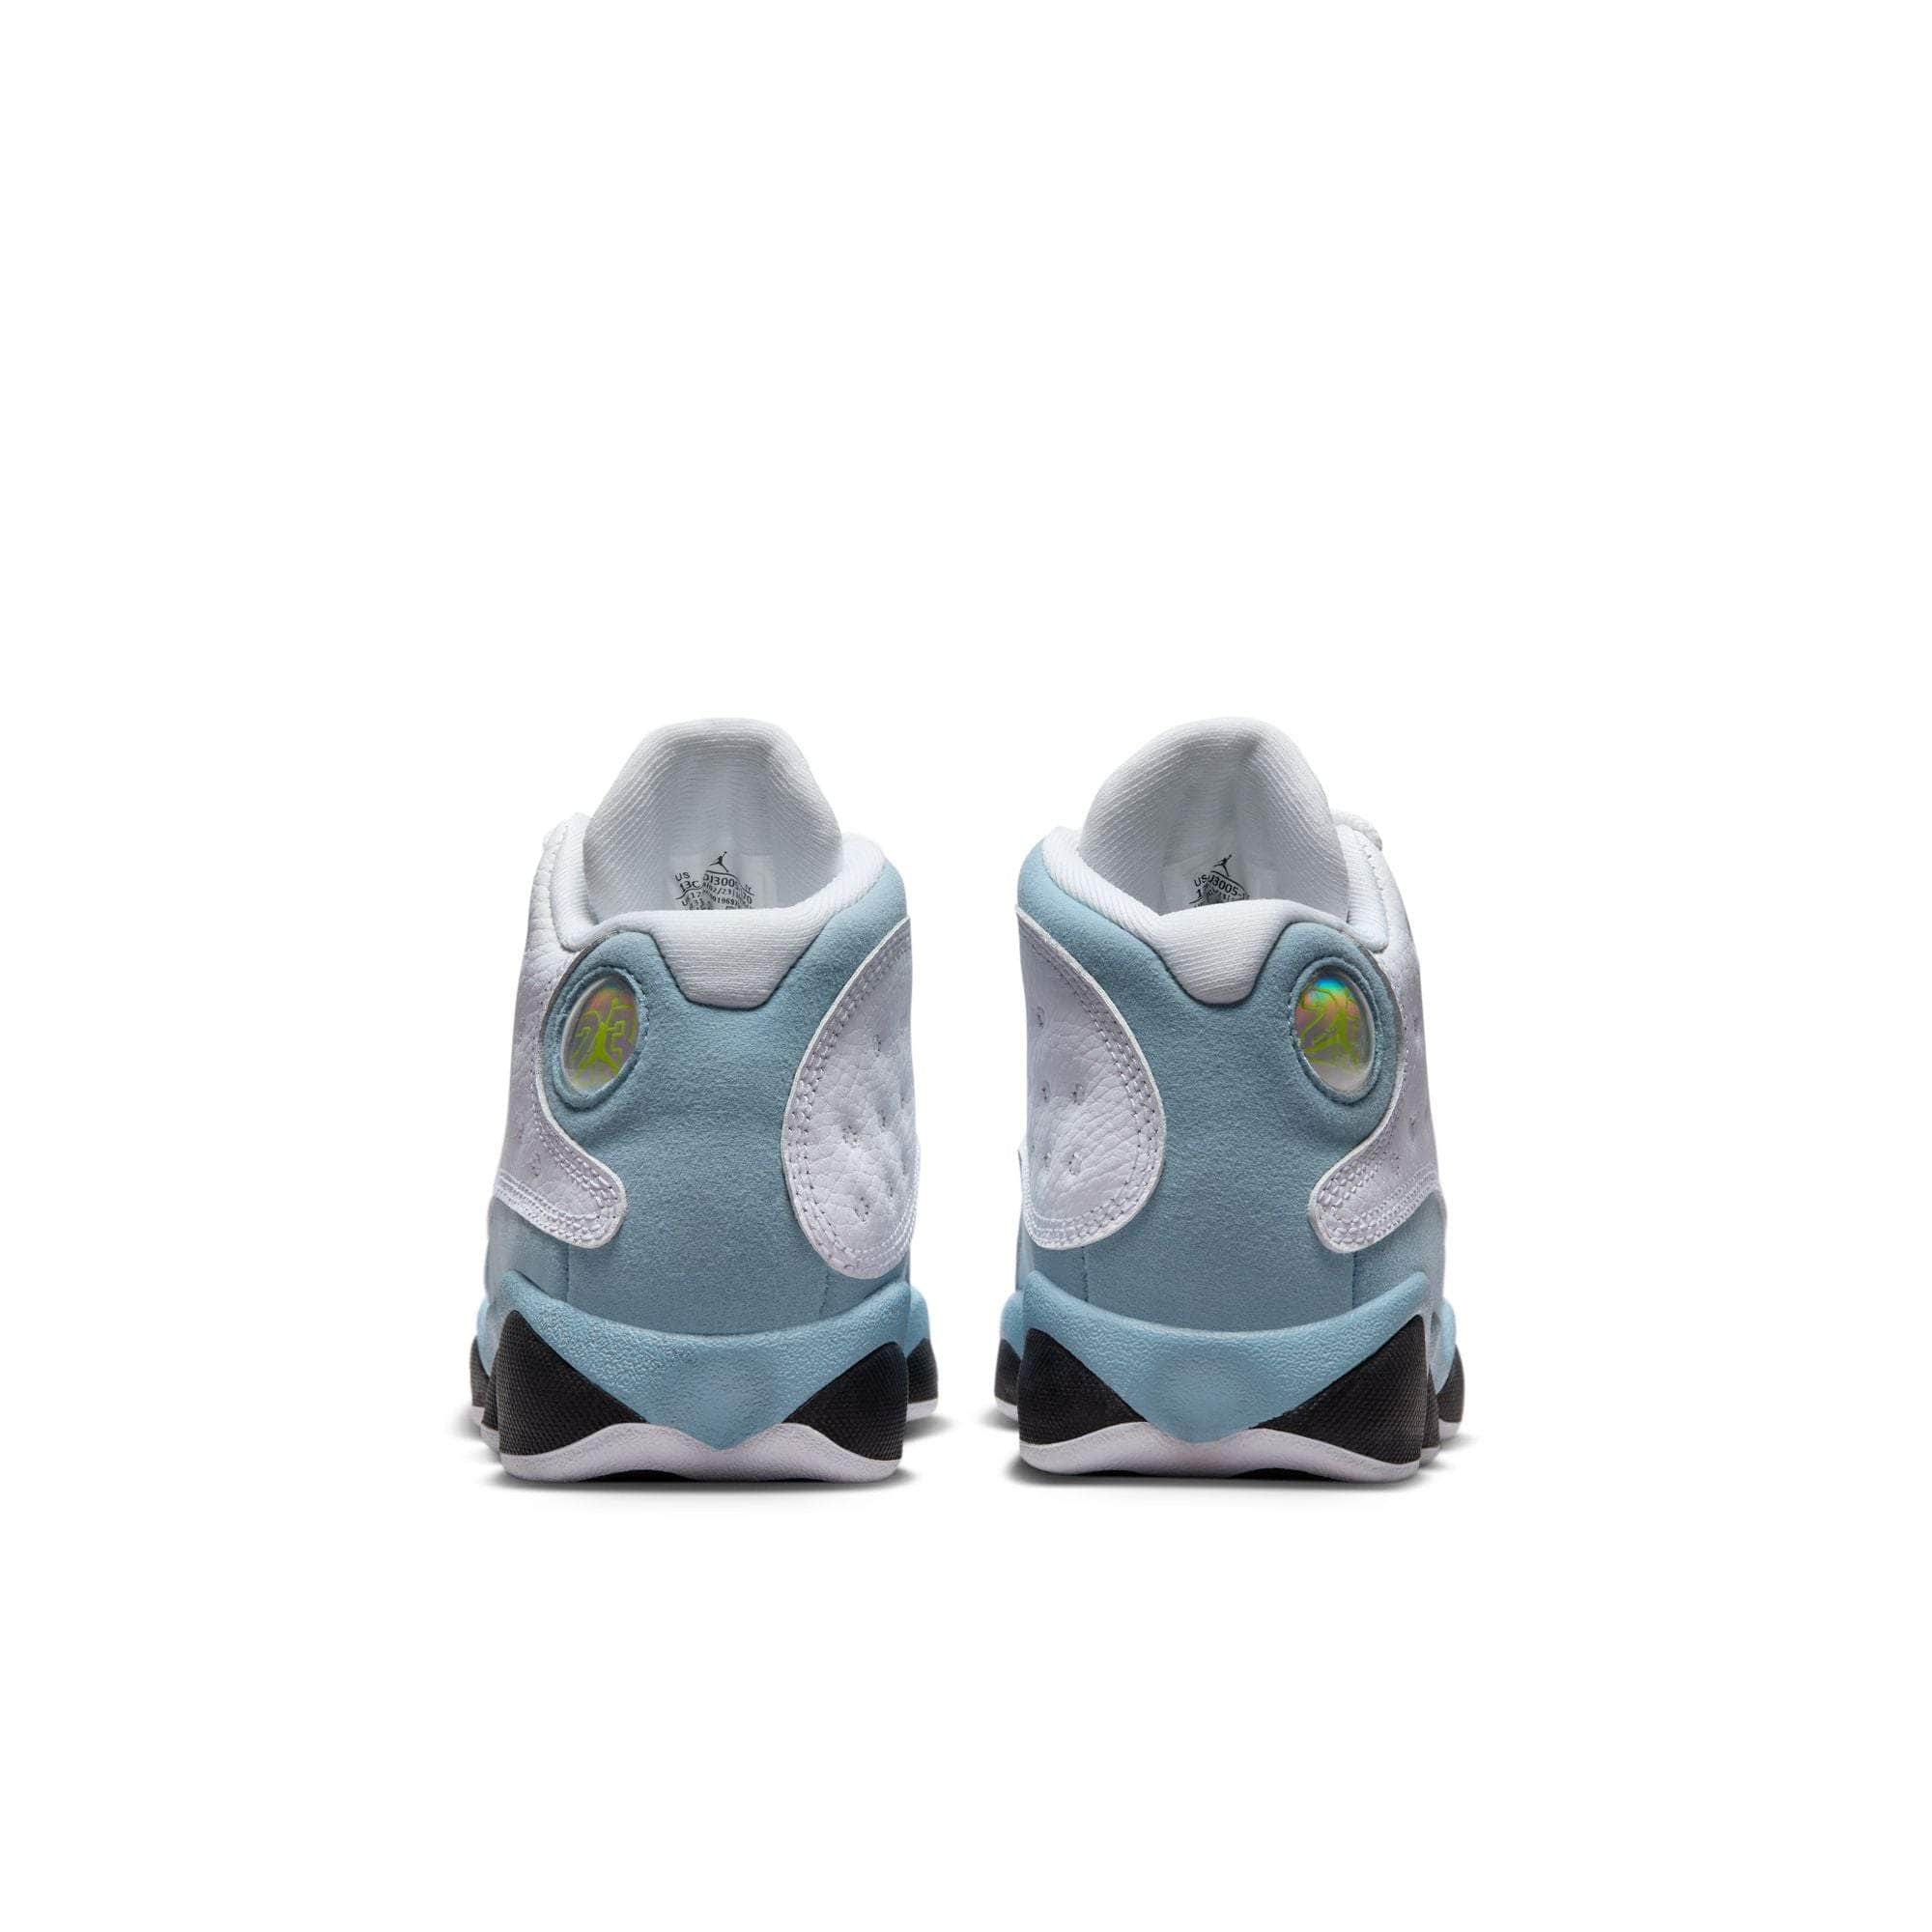 Air Jordan Footwear Air Jordan 13 “Blue Grey” - Kid's PS